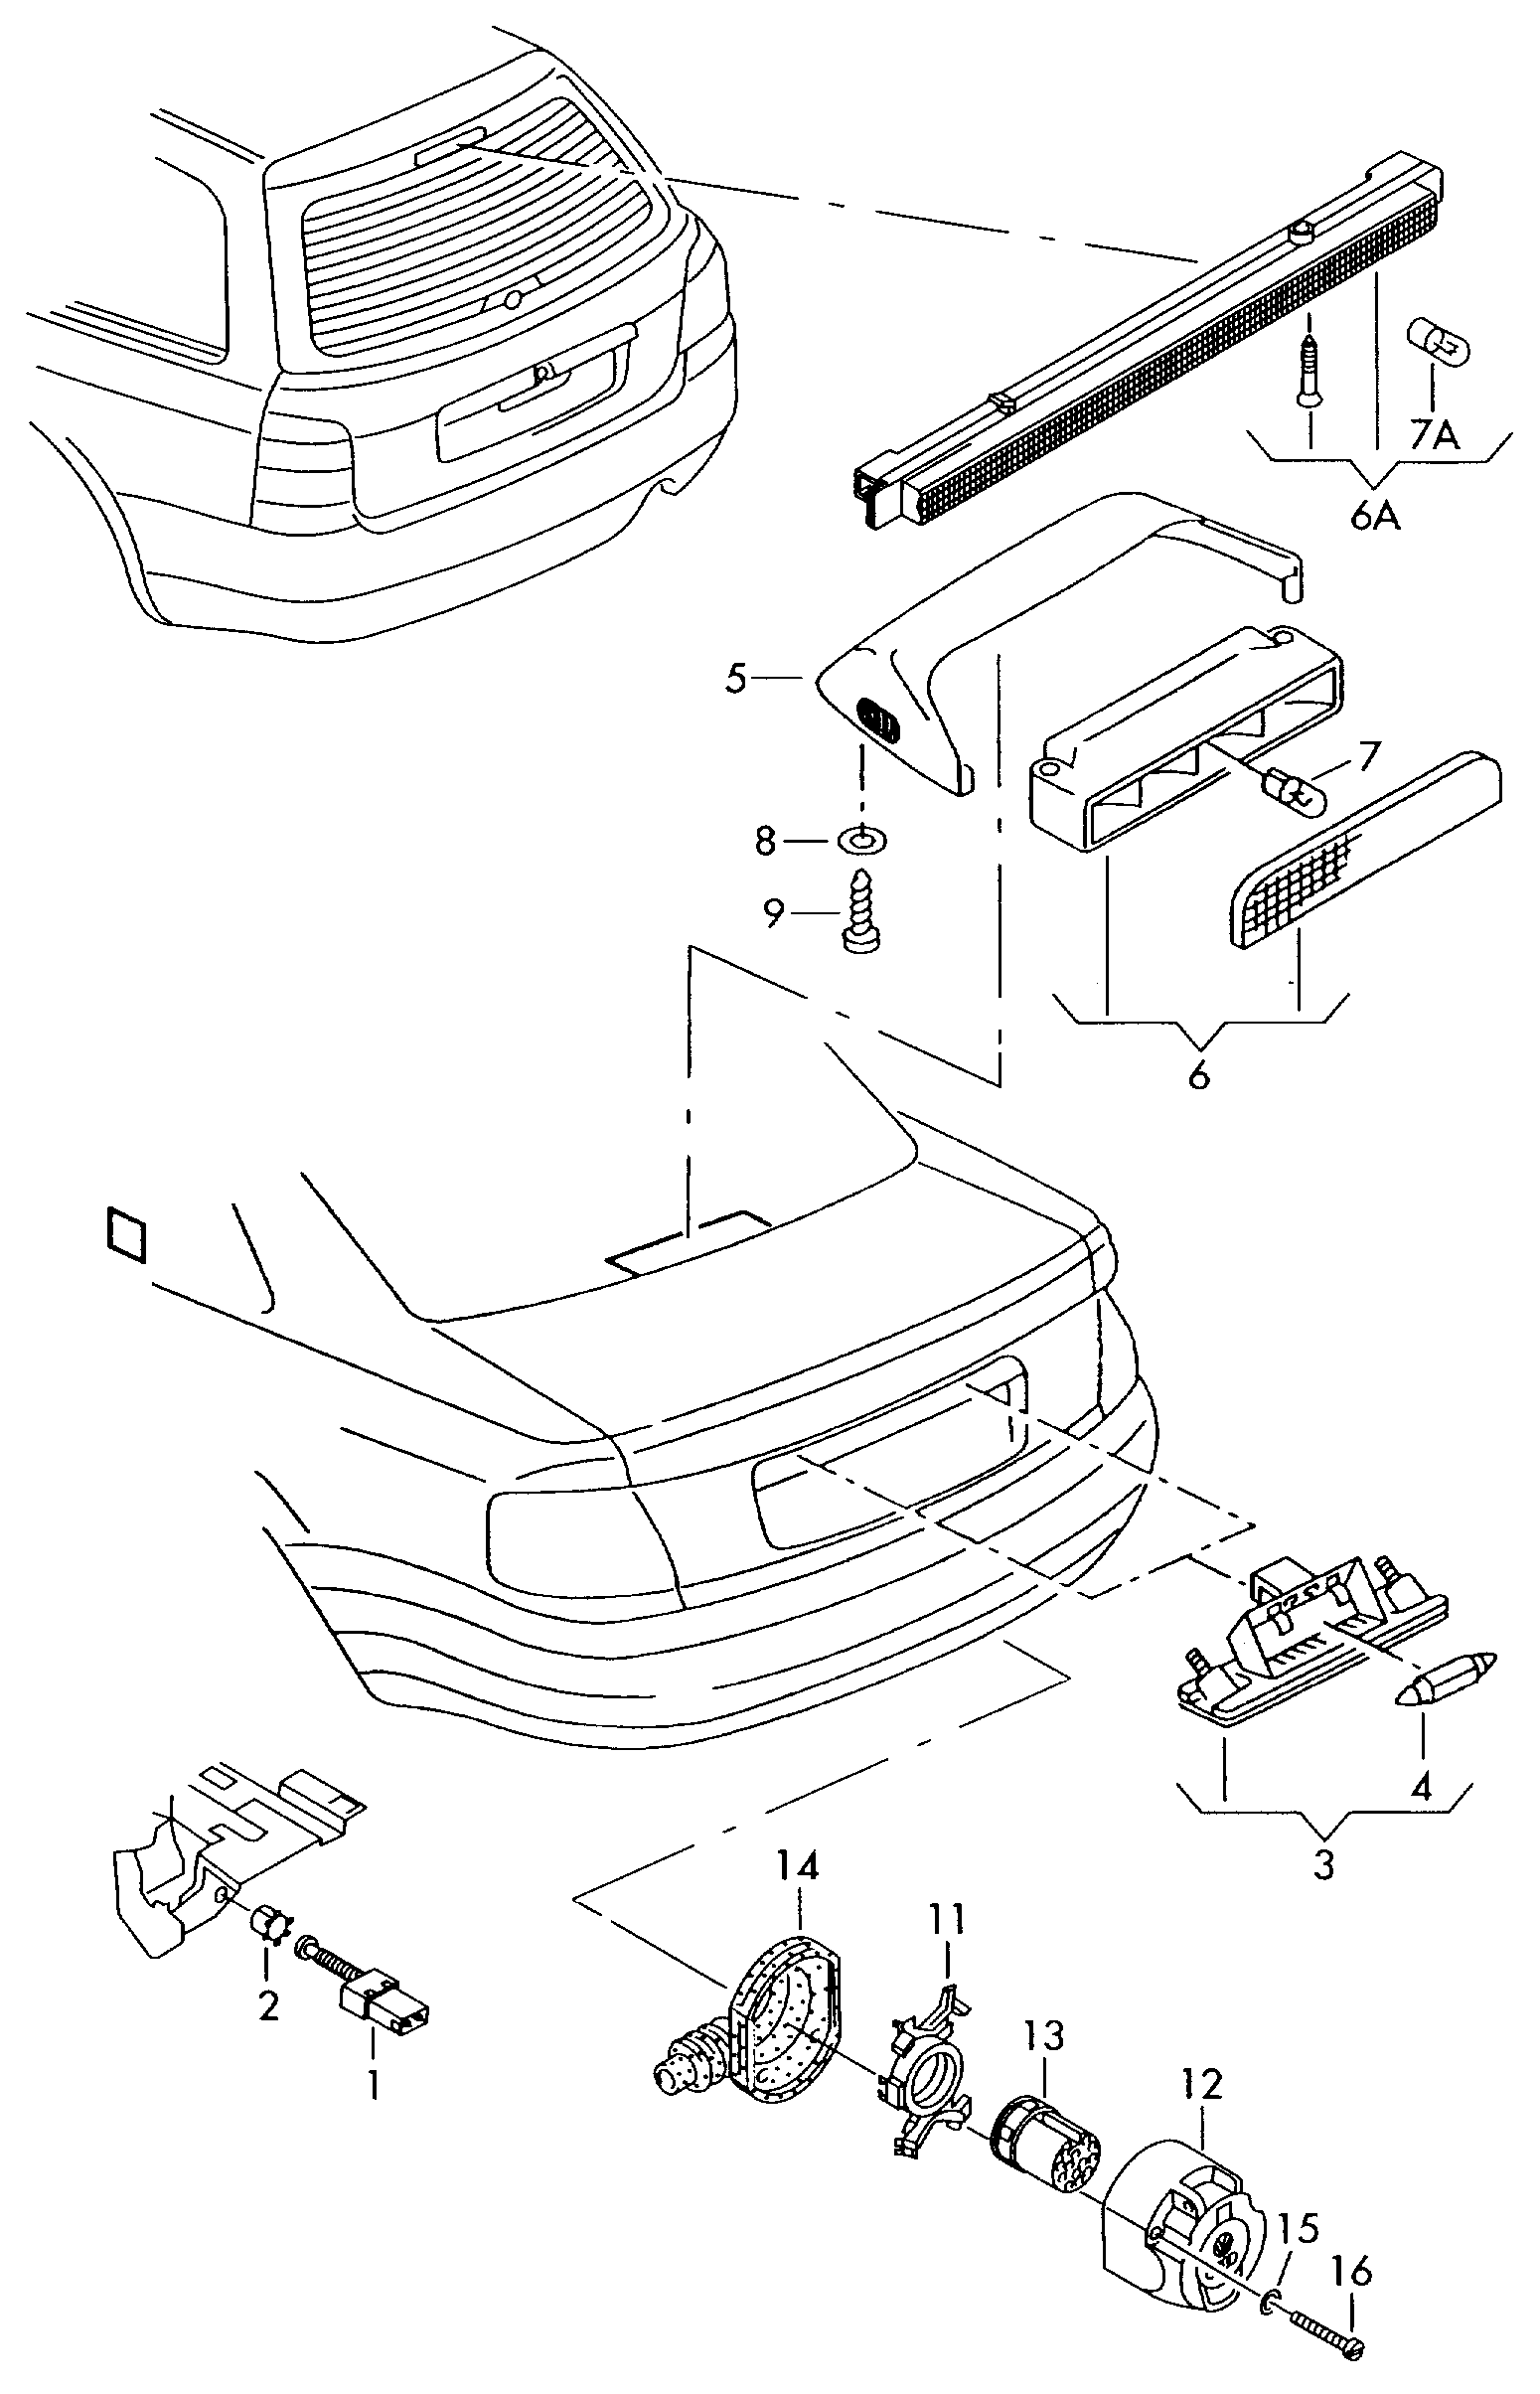 插座; 拖车装置 - Audi A4/Avant(A4)  